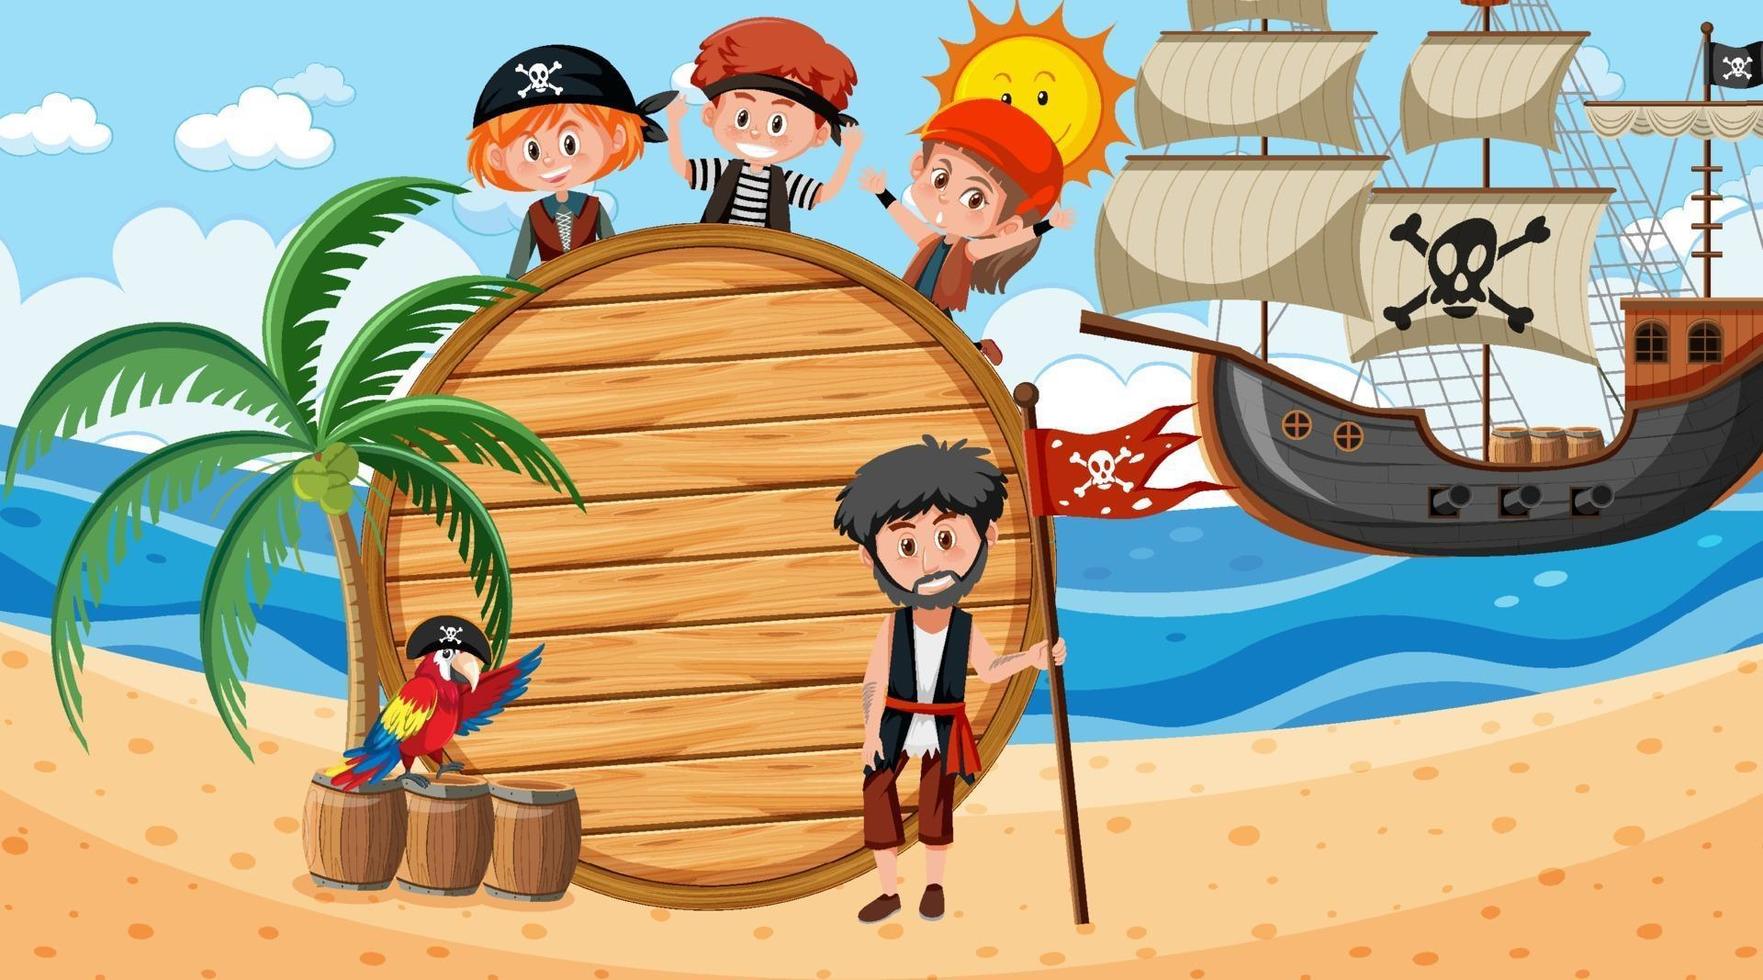 modello di banner vuoto con bambini pirati sulla scena diurna della spiaggia vettore